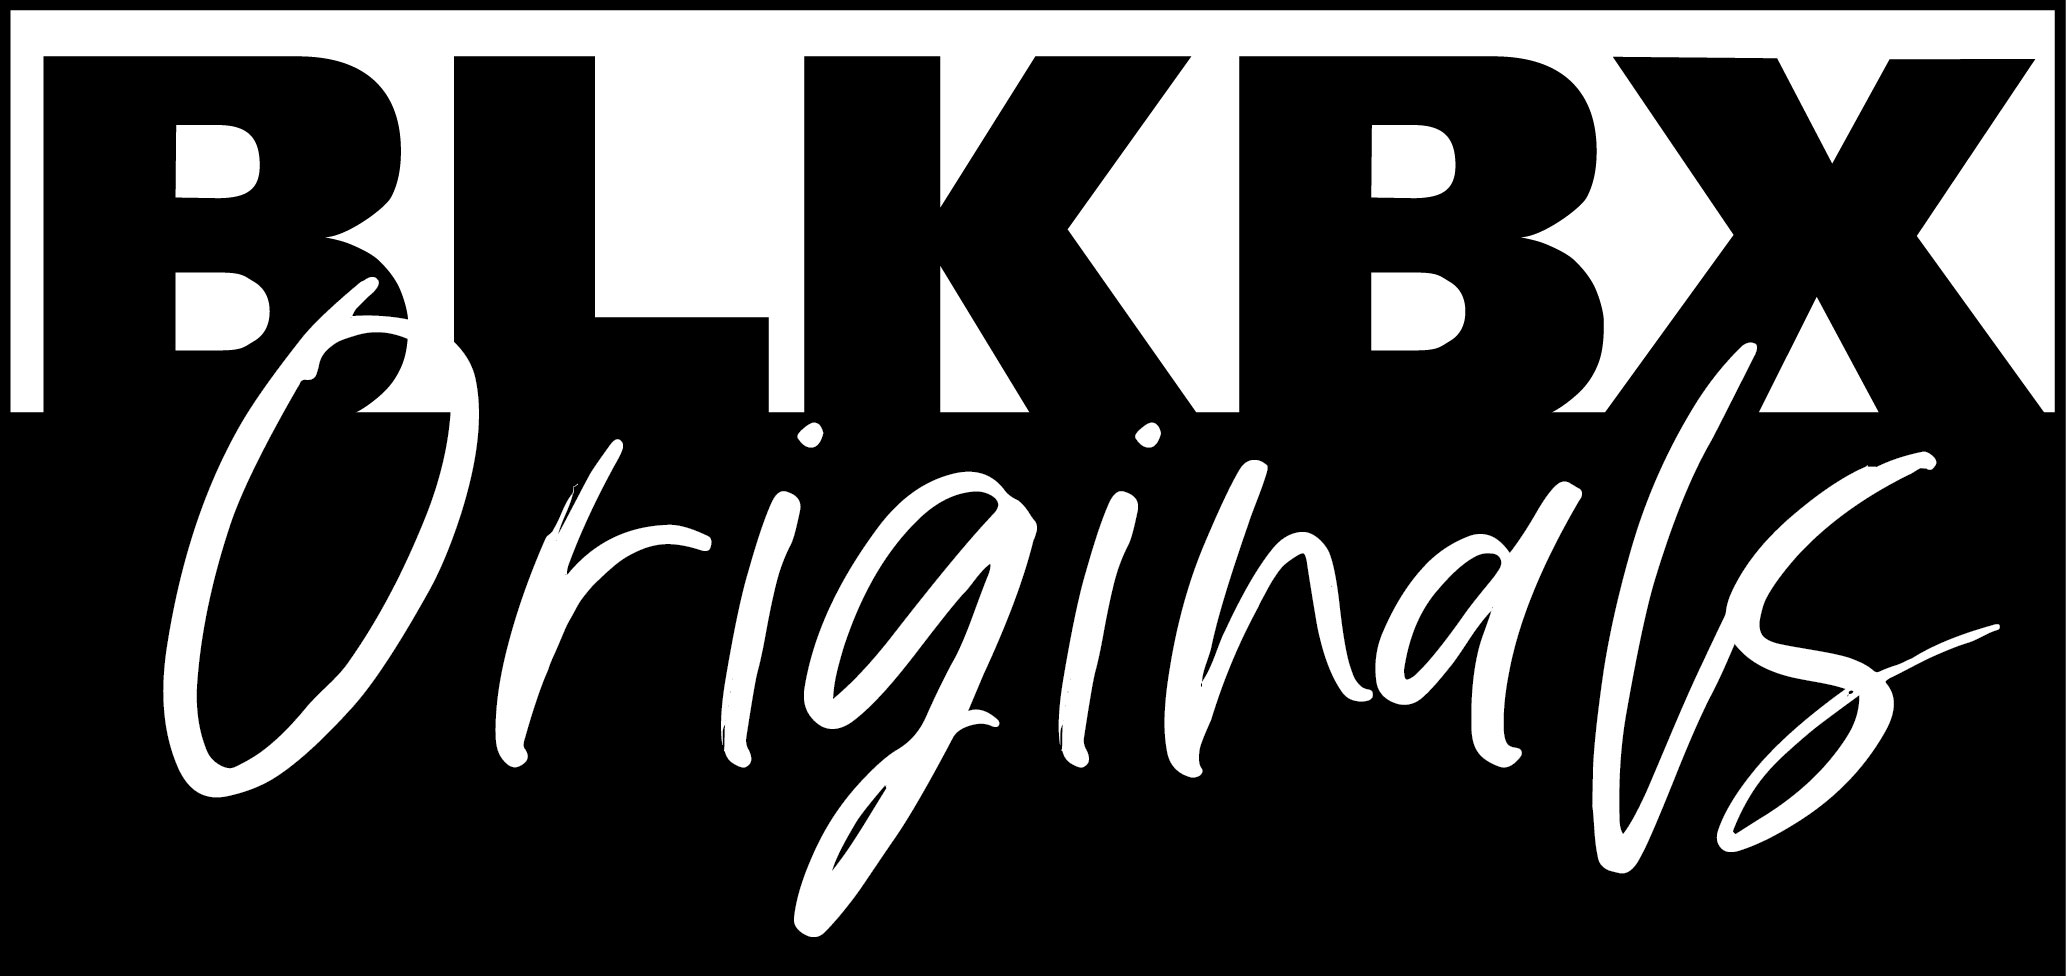 The BLK Originals